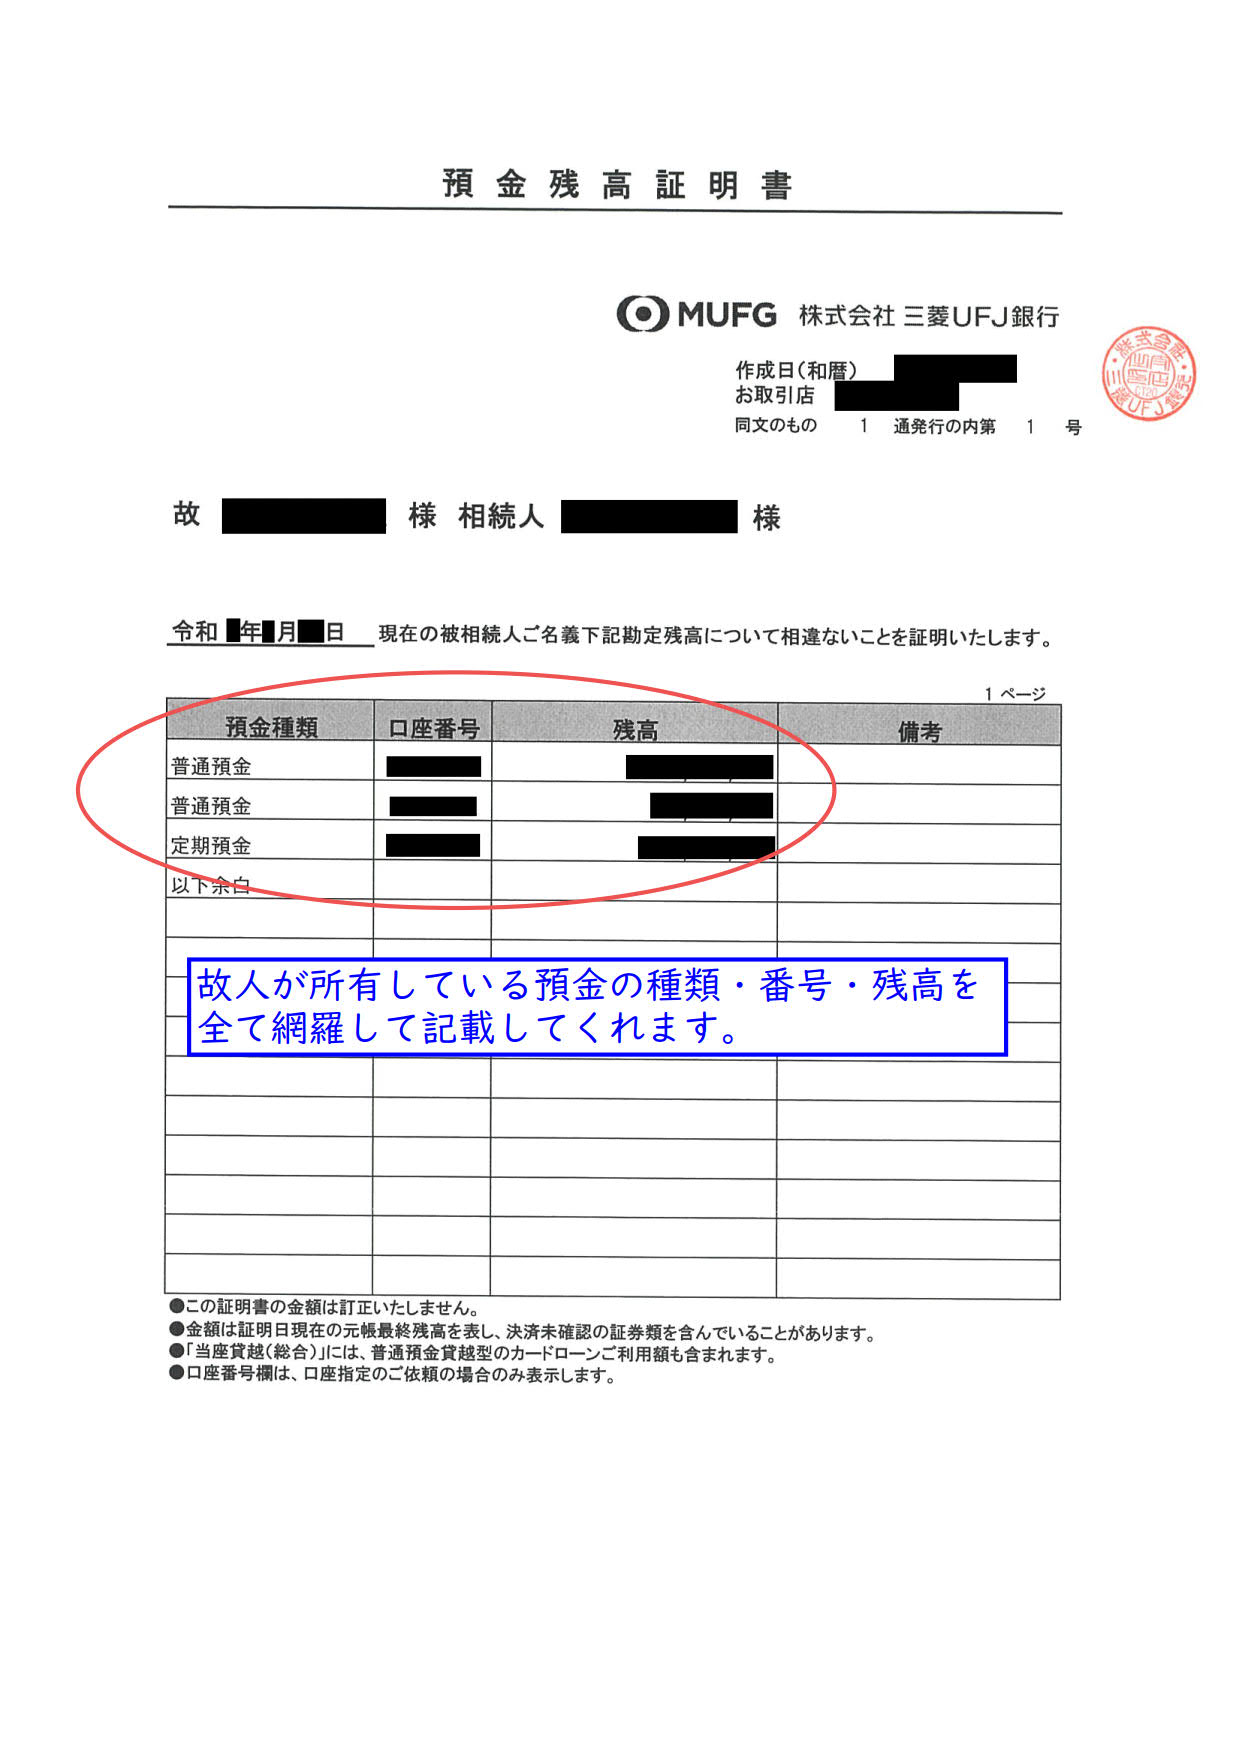 相続税の申告で残高証明書を取得して税務署に提出する必要はありますか 東京の相続税申告専門 税理士法人ブライト相続